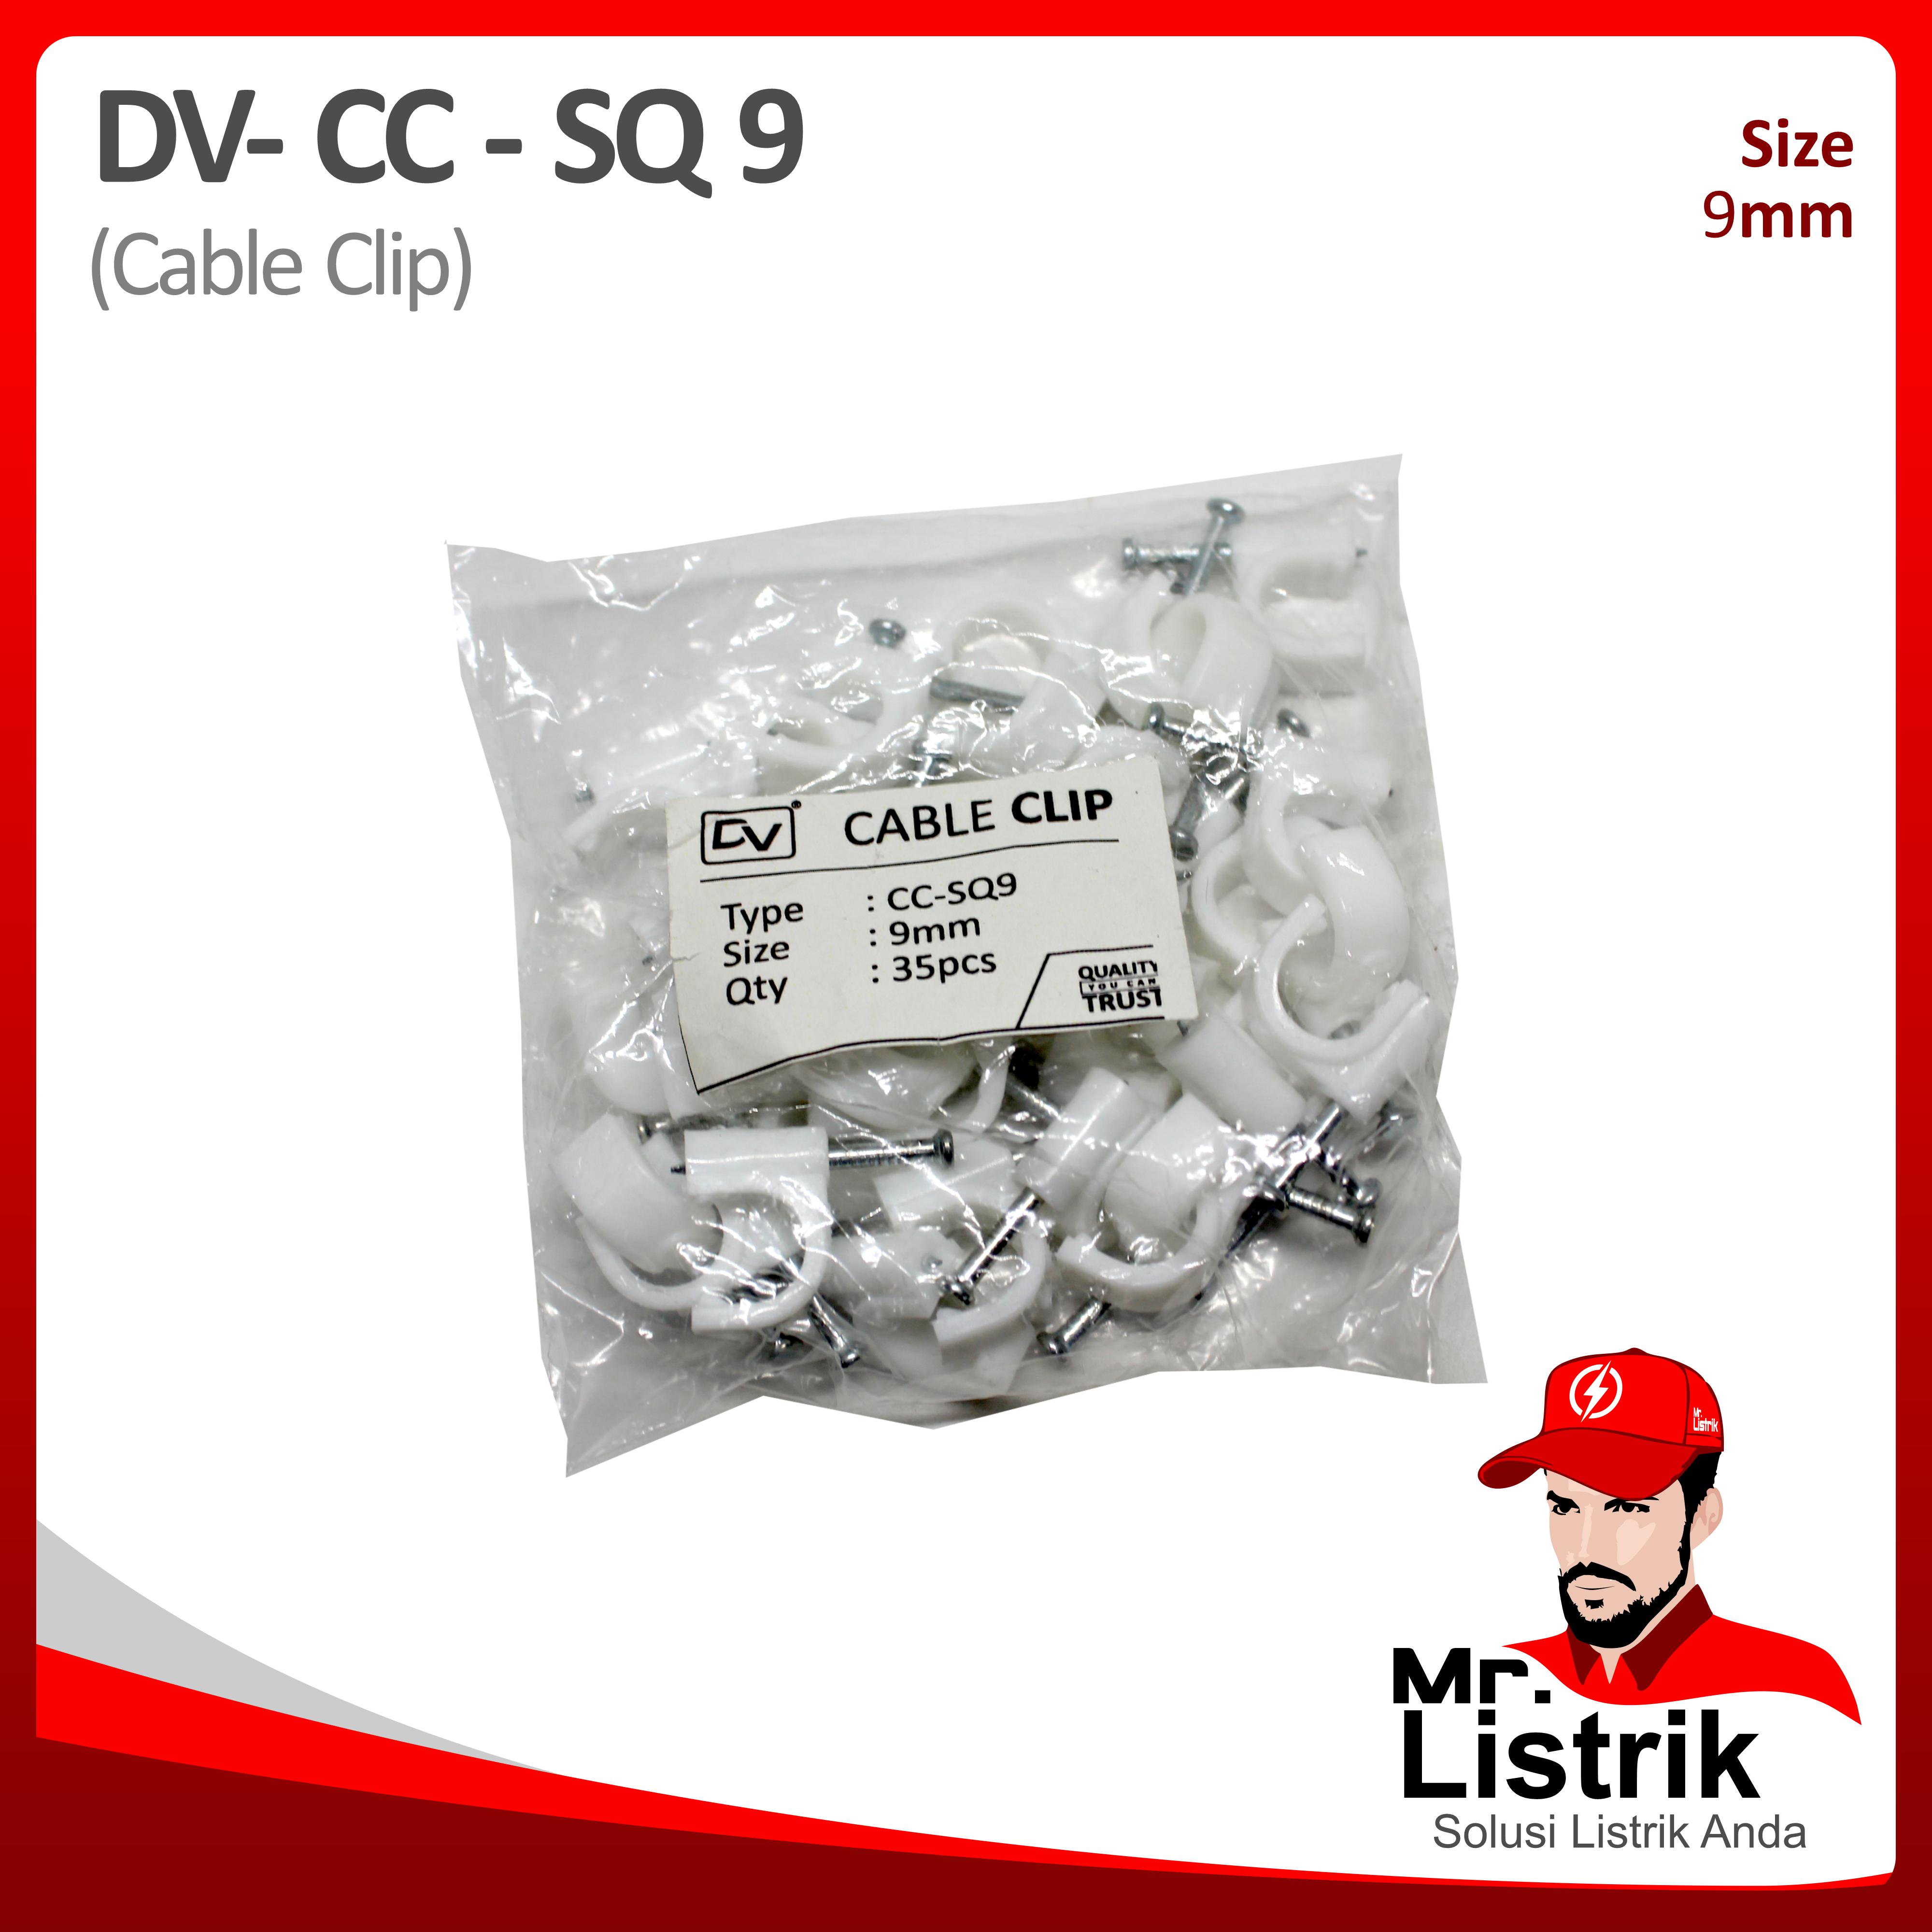 Cable Clip 9mm DV CC-SQ 9